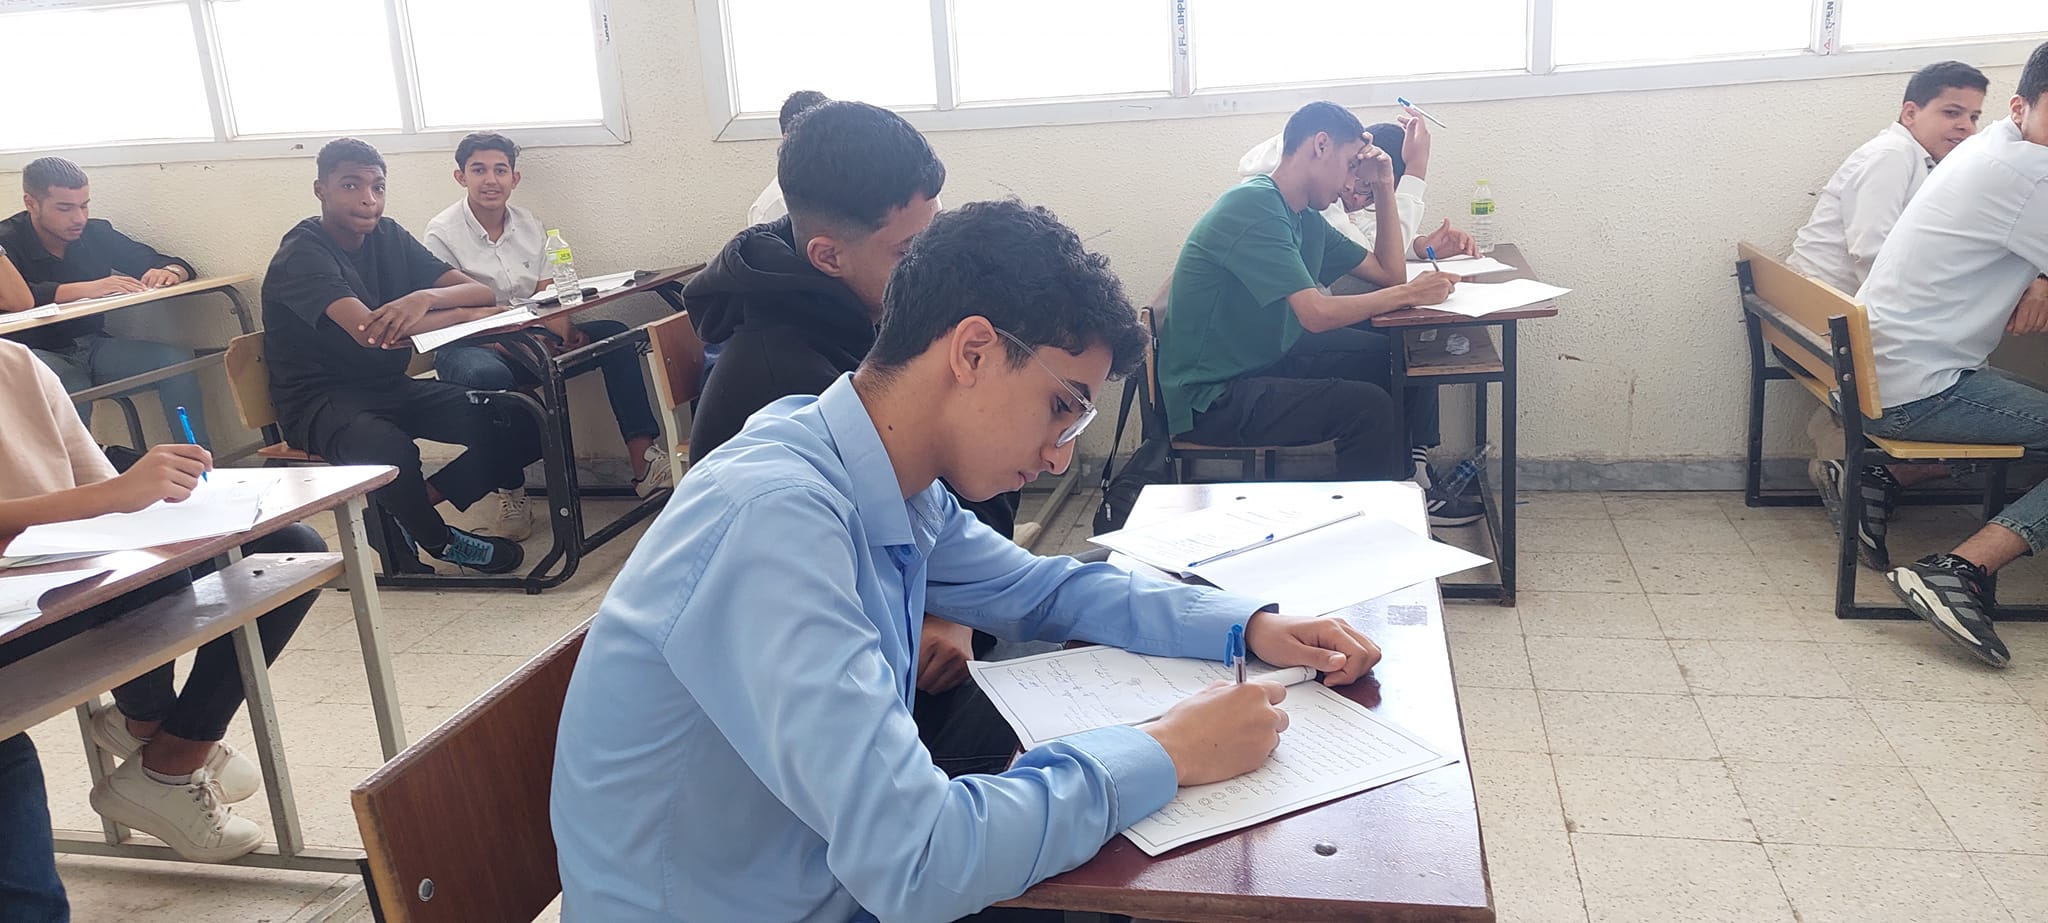 بدء امتحانات الدور الأول لشهادة إتمام مرحلة التعليم الأساسي بكامل التراب الليبي .